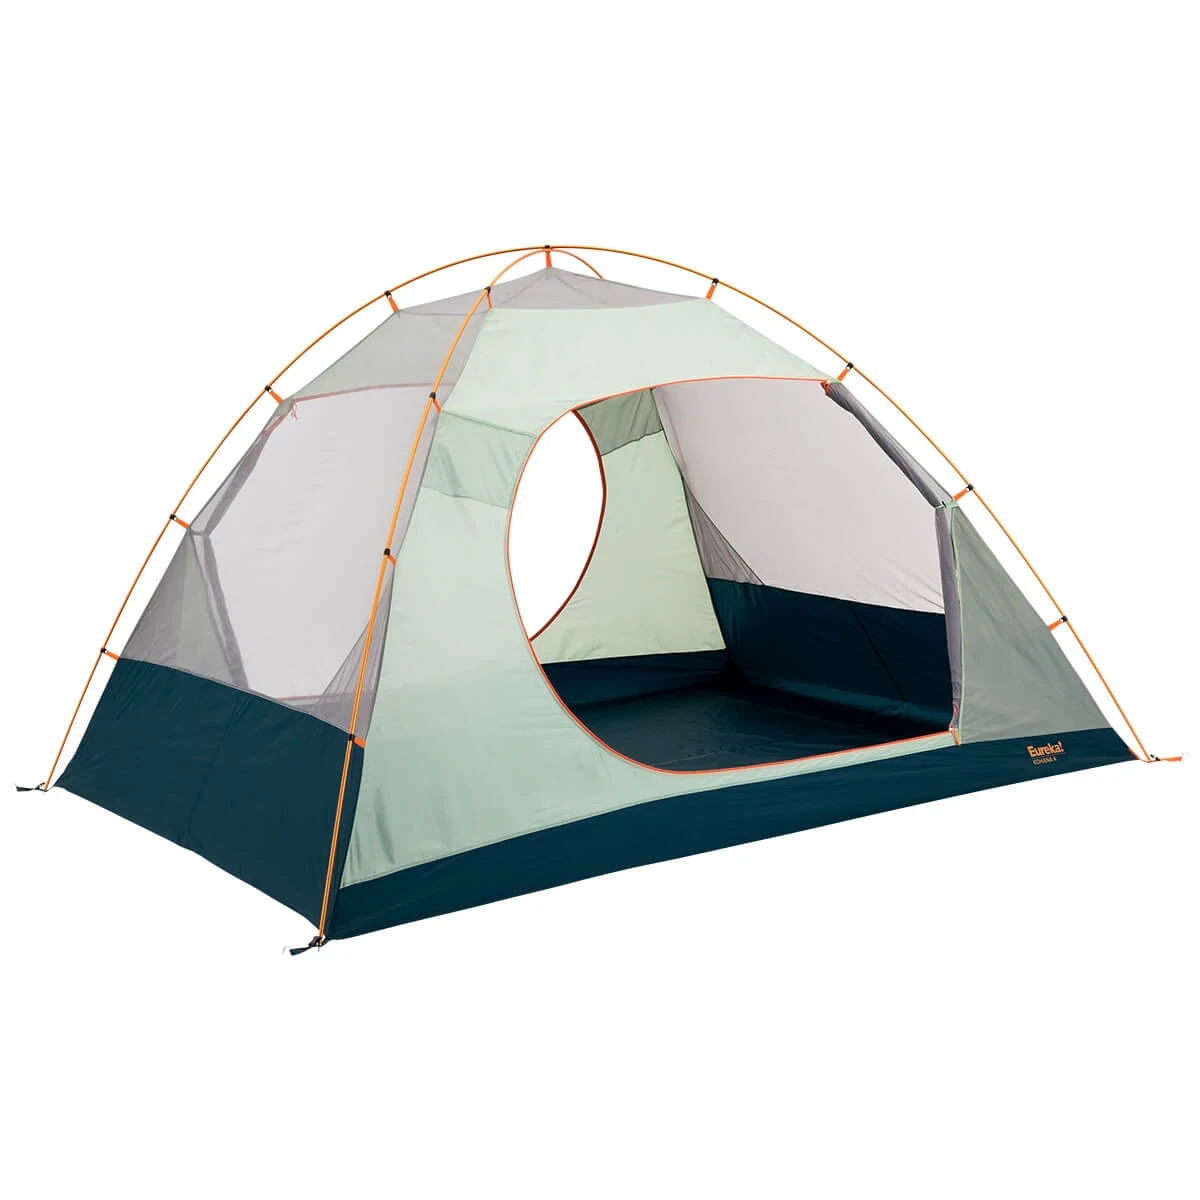 Kohana 4 tent with rainfly off and door open